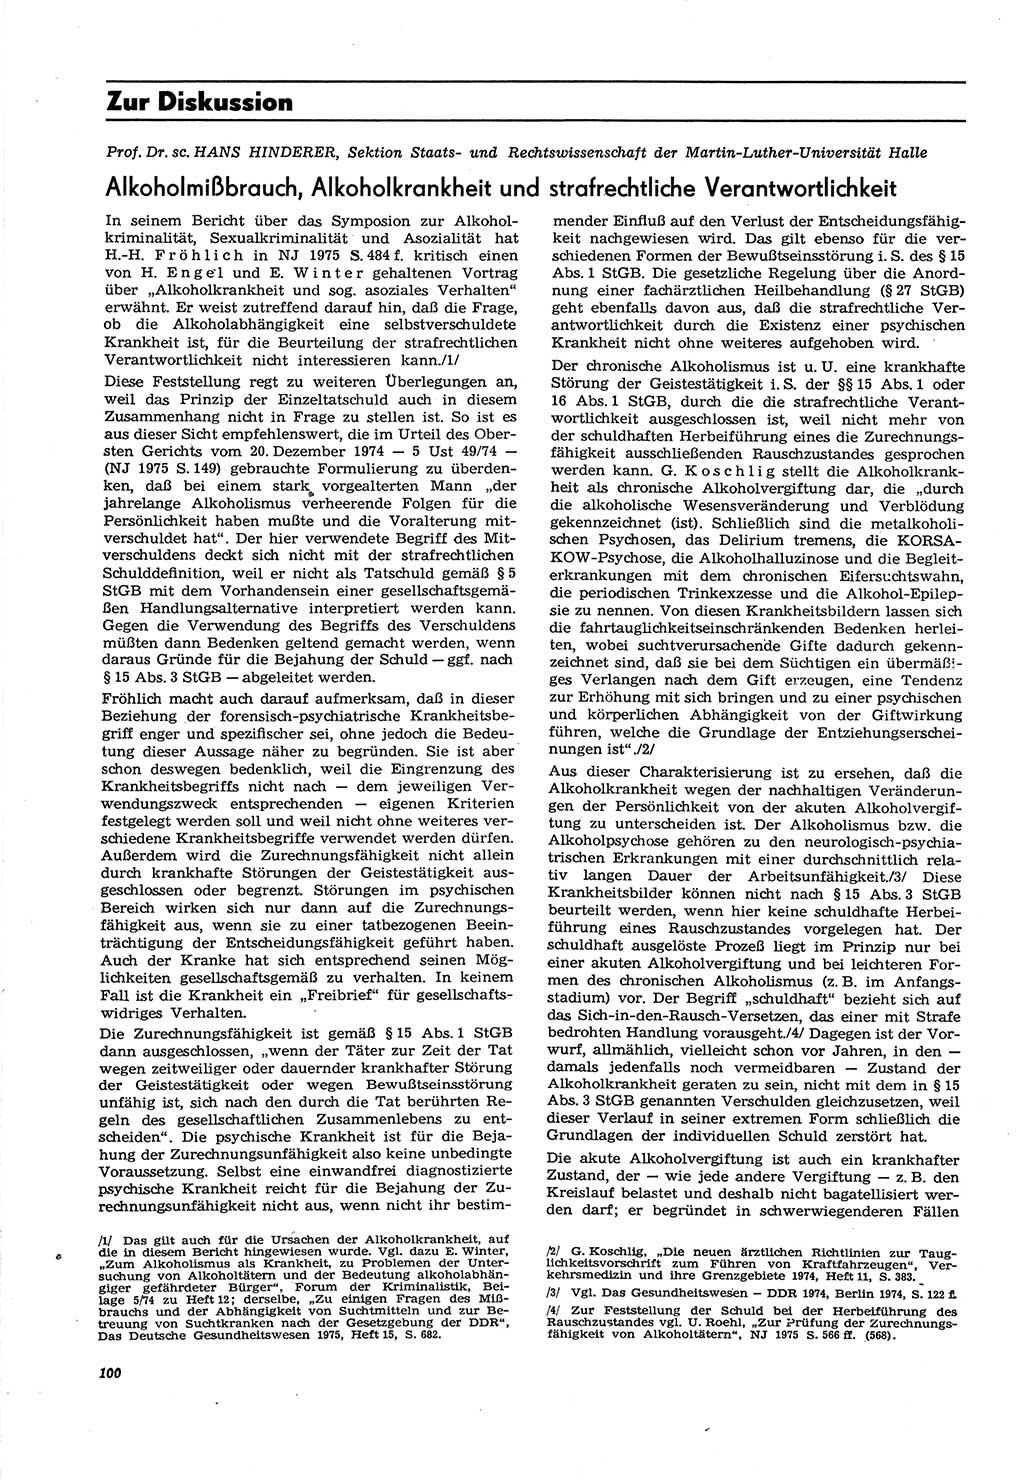 Neue Justiz (NJ), Zeitschrift für Recht und Rechtswissenschaft [Deutsche Demokratische Republik (DDR)], 30. Jahrgang 1976, Seite 100 (NJ DDR 1976, S. 100)